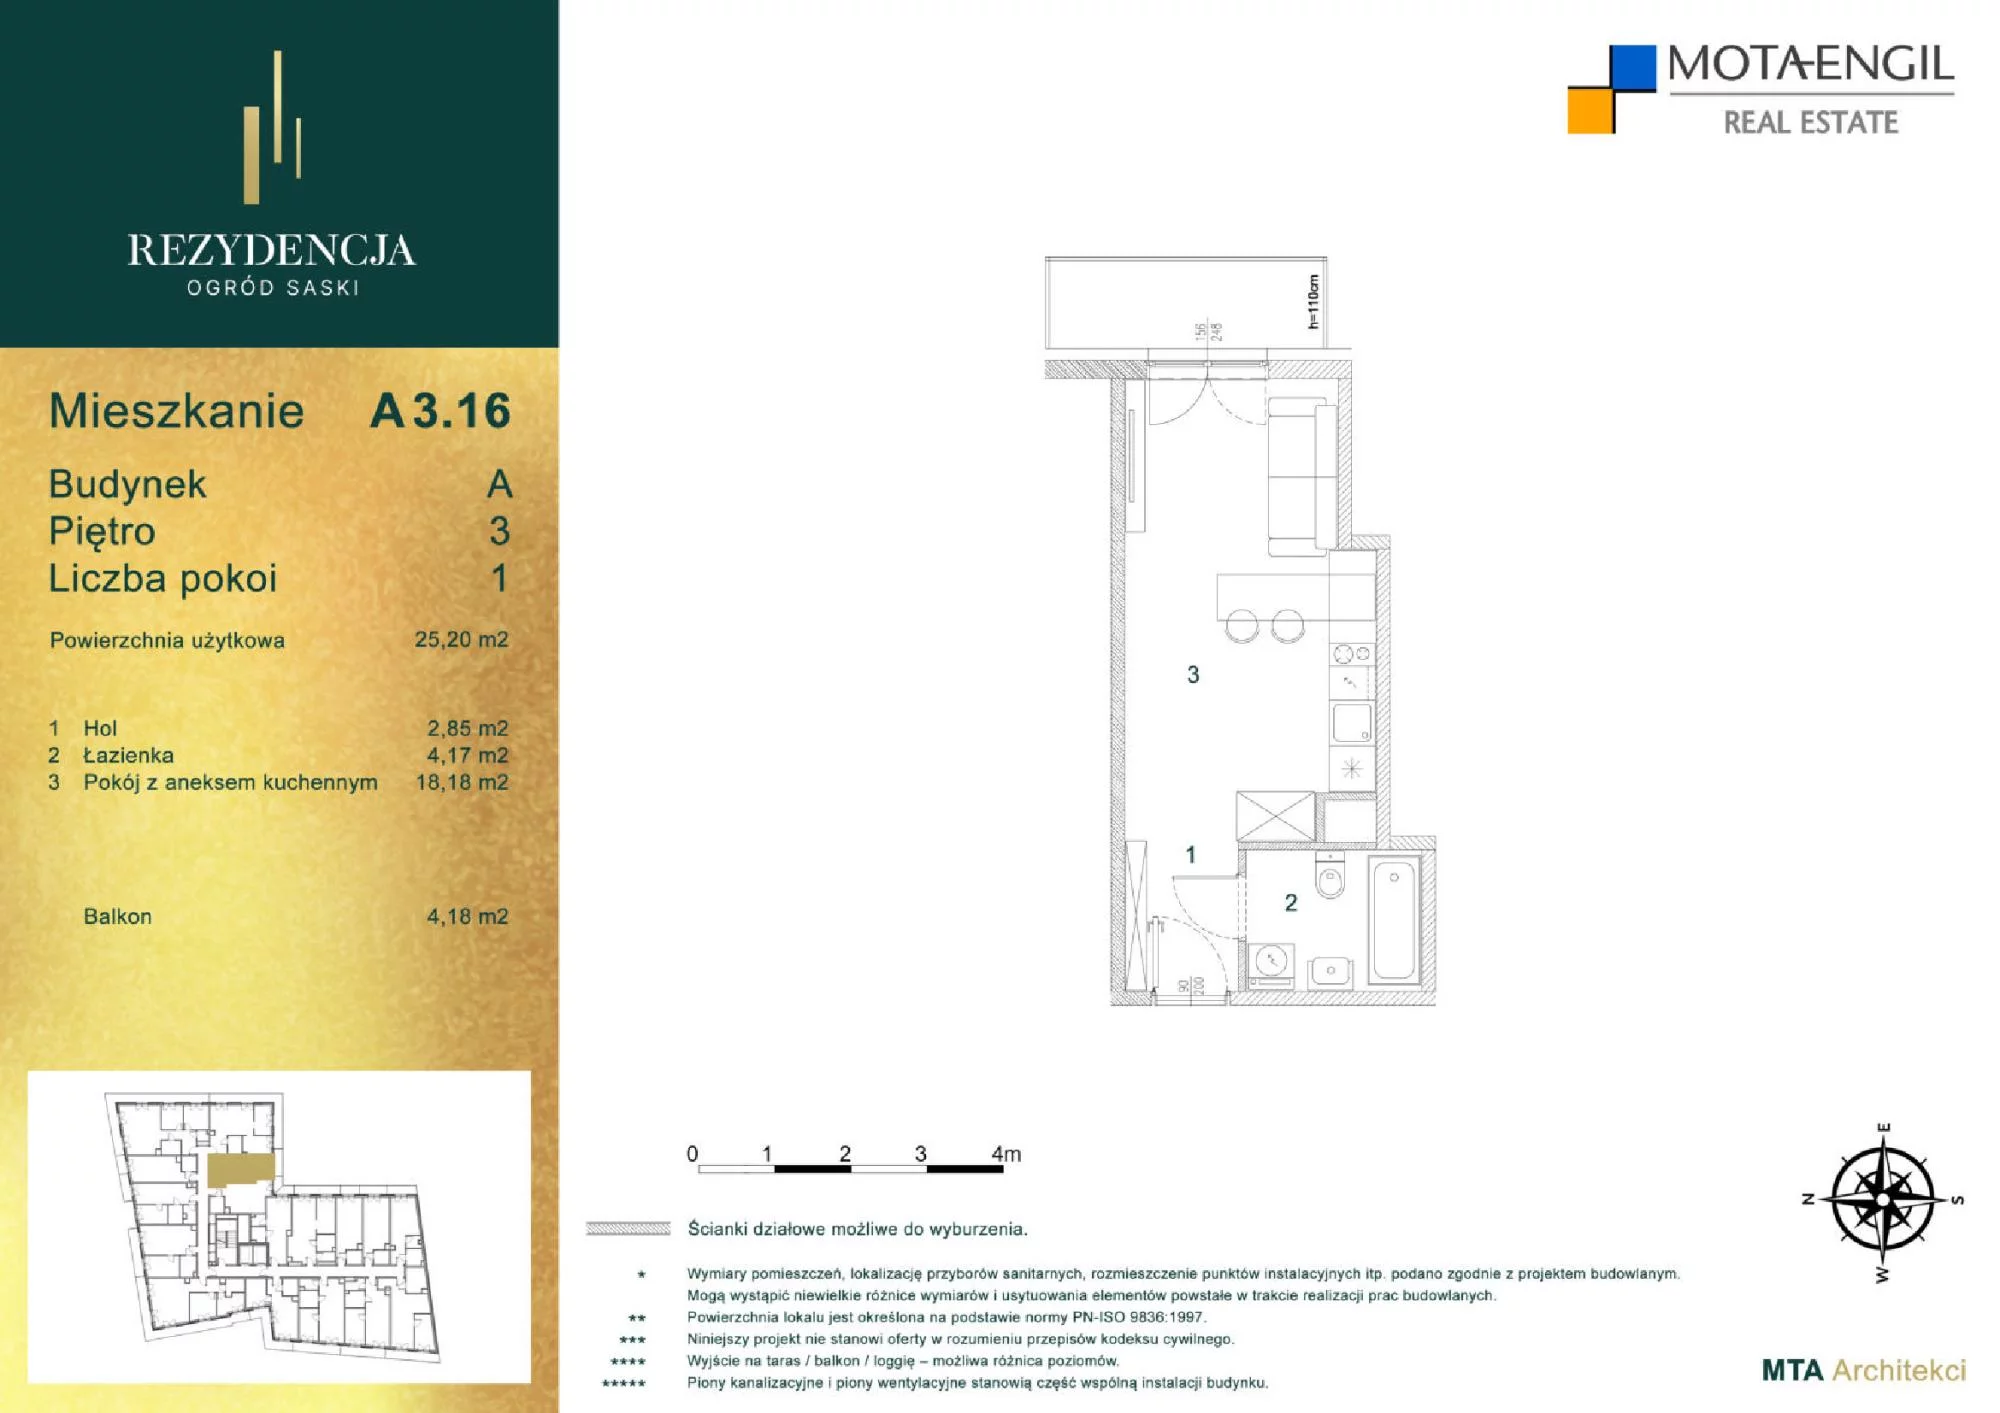 Mieszkanie 25,20 m², piętro 3, oferta nr A3.16, Rezydencja Ogród Saski, Lublin, Wieniawa, ul. Jasna 7, 7A